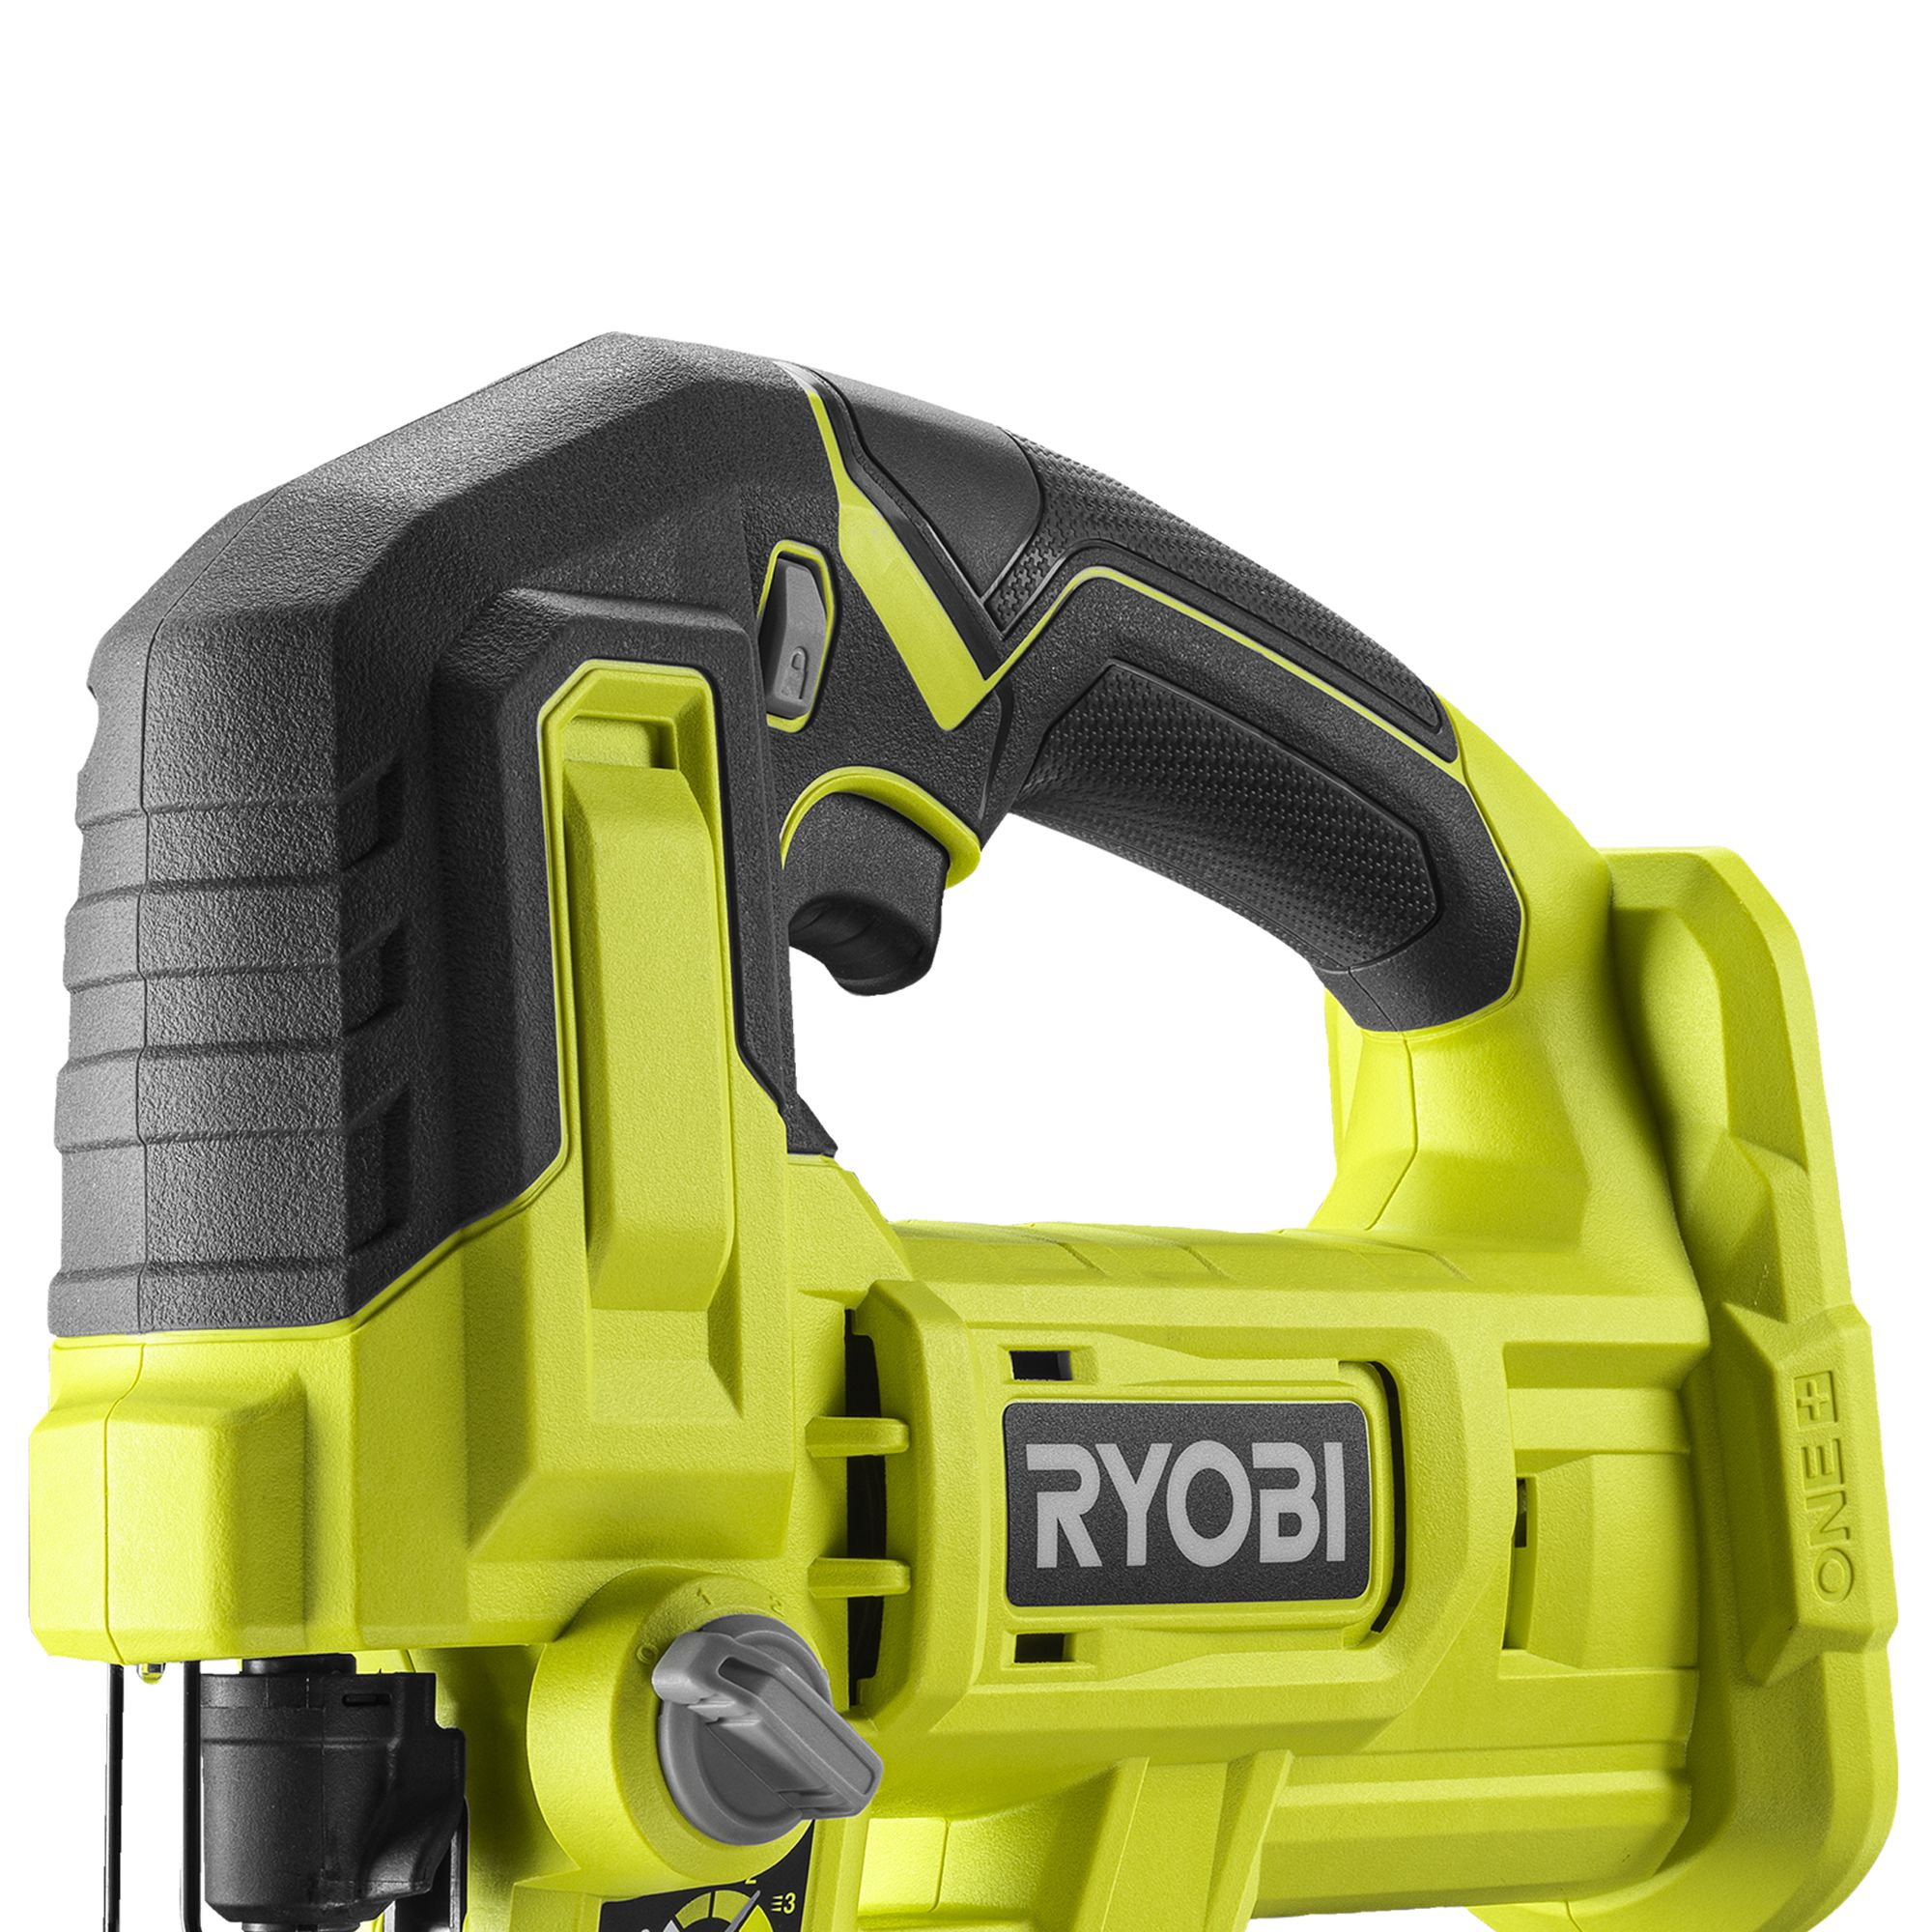 Ryobi ONE+ 18V One+ Brushed Cordless Jigsaw (Bare Tool) - RJS18-0